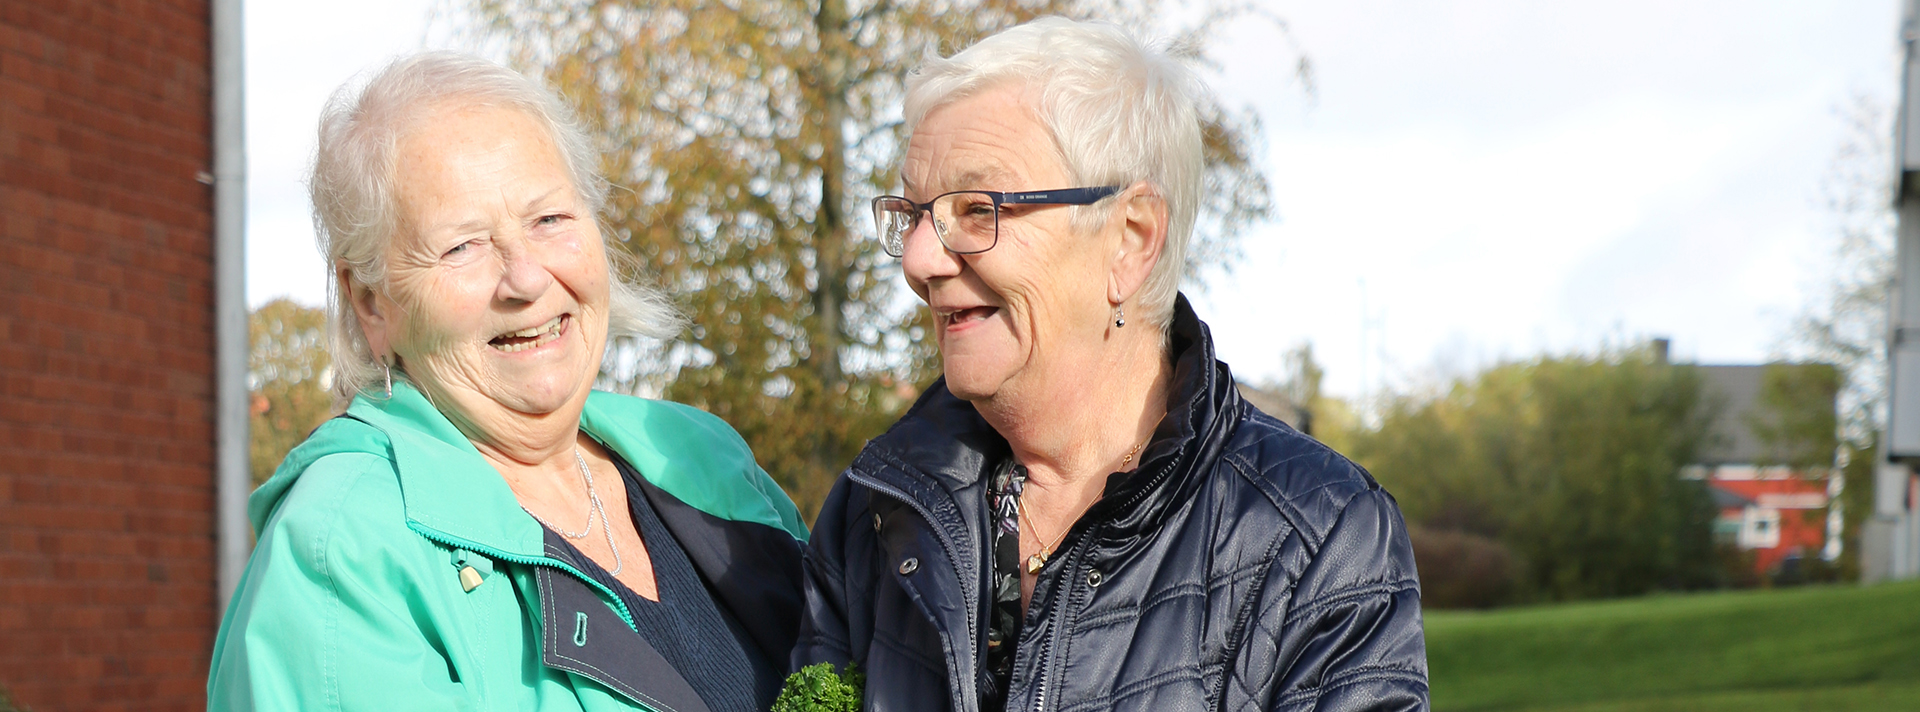 Två äldre kvinnor står ute på en gård och skrattar